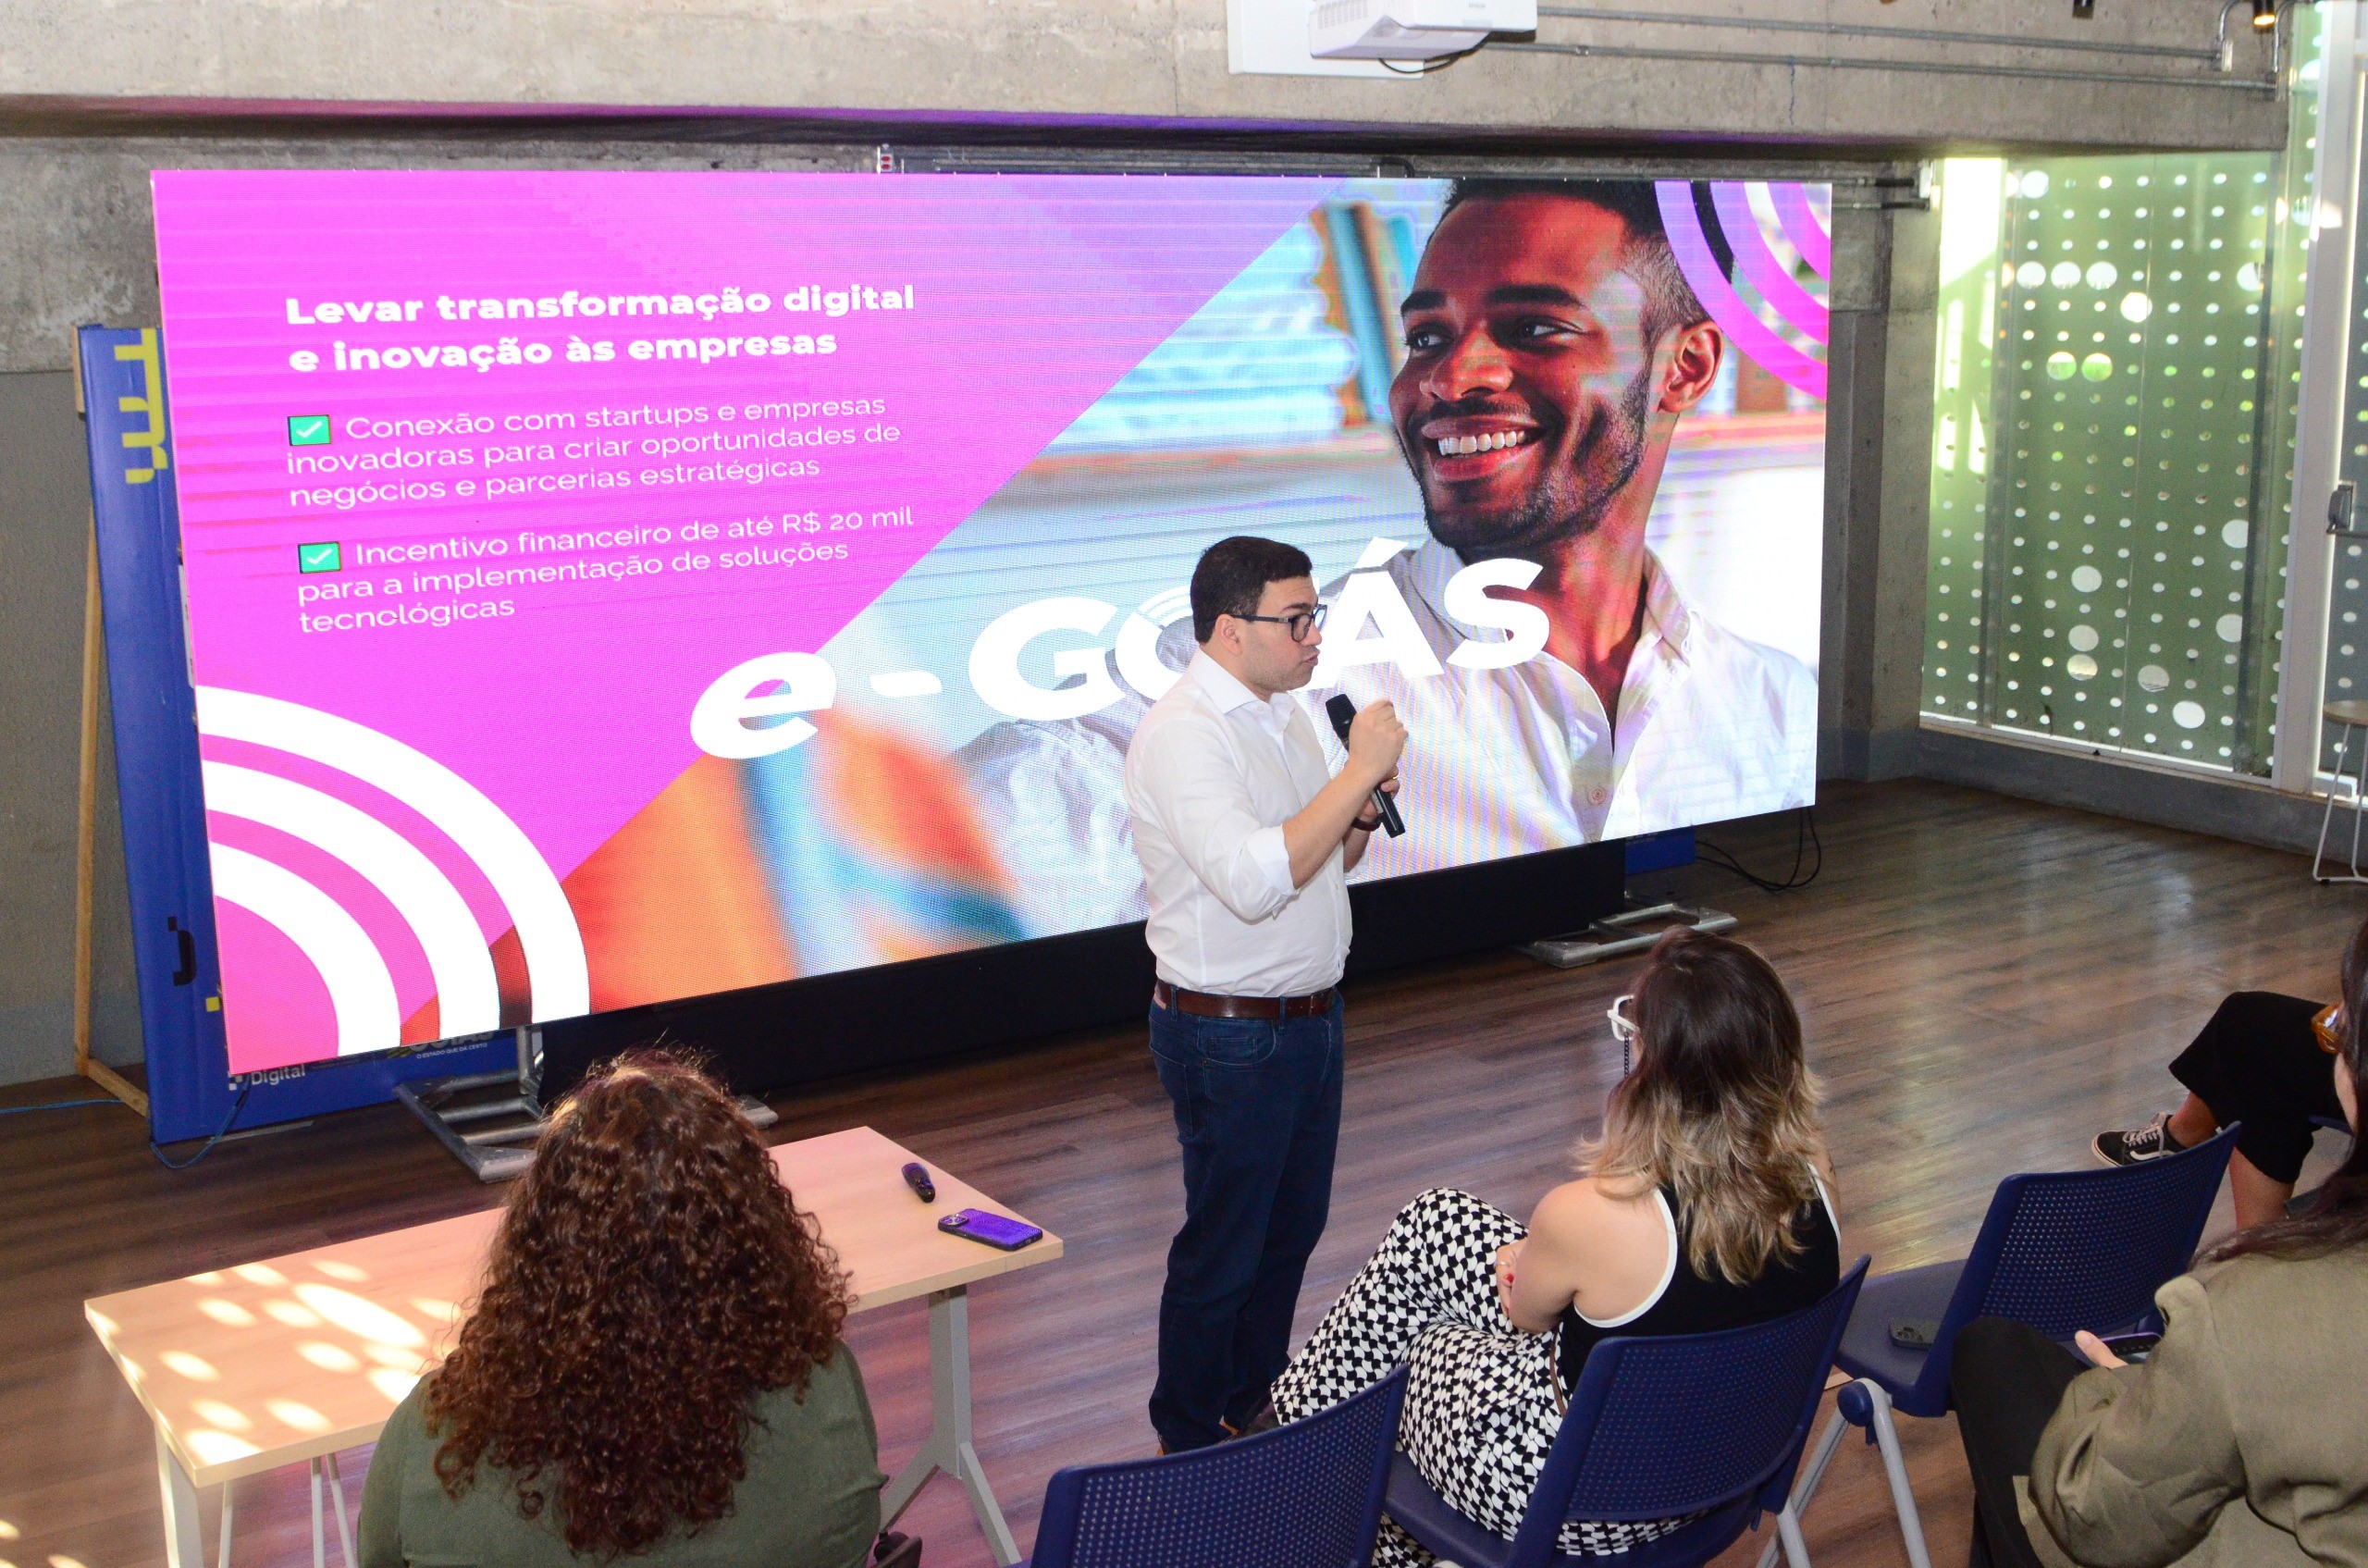 Lançado e-Goiás - Transformação Digital das Empresas